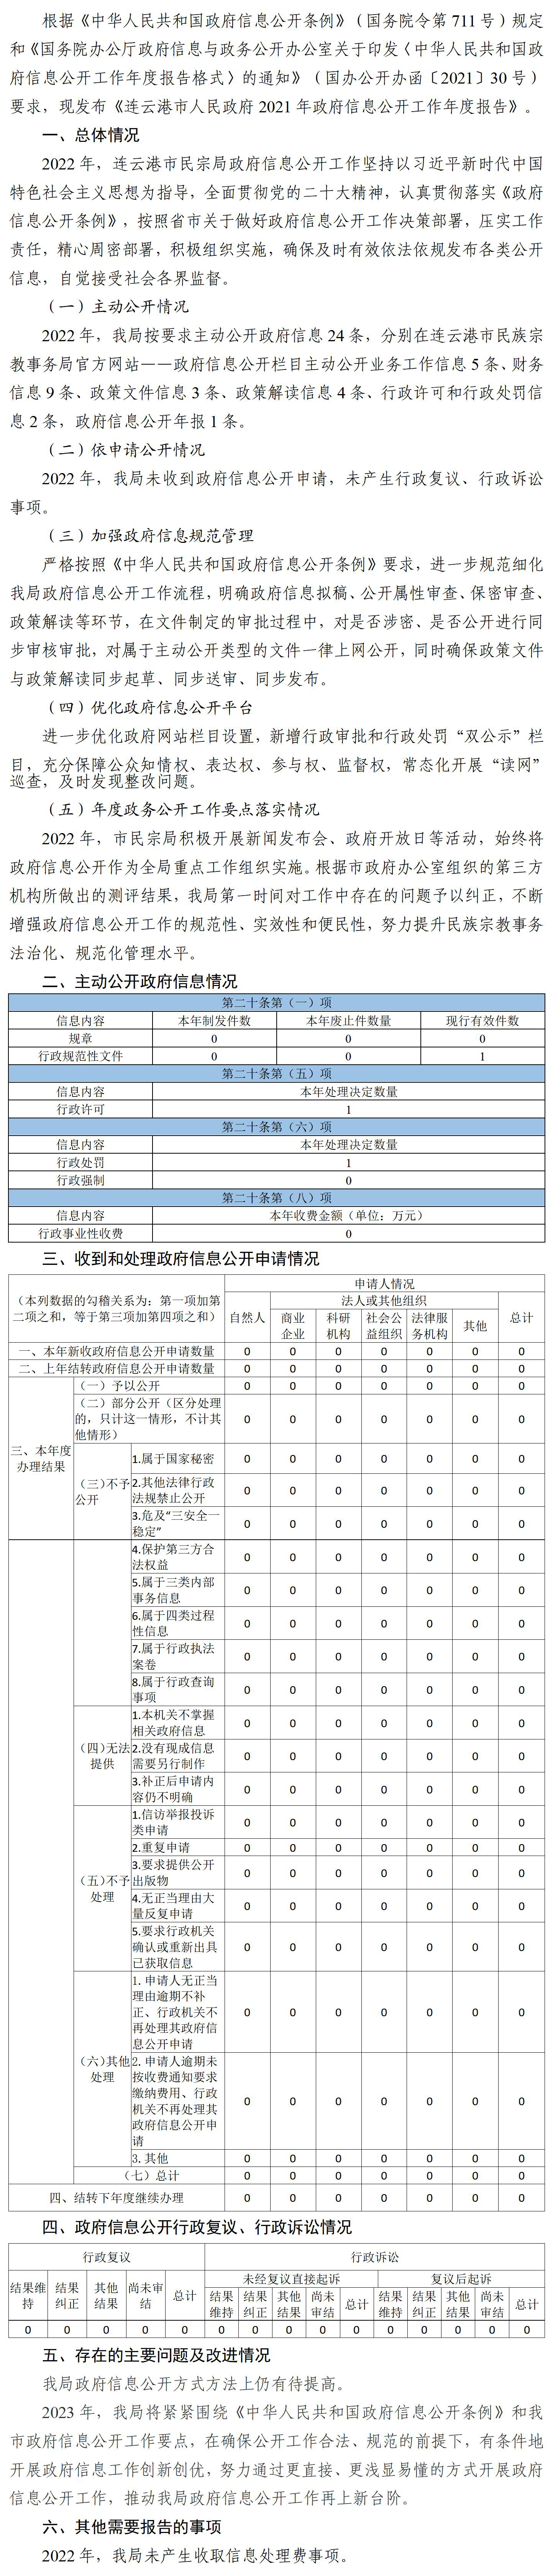 连云港市民宗局2022年传奇娱乐手机版
工作年度报告_01.jpg